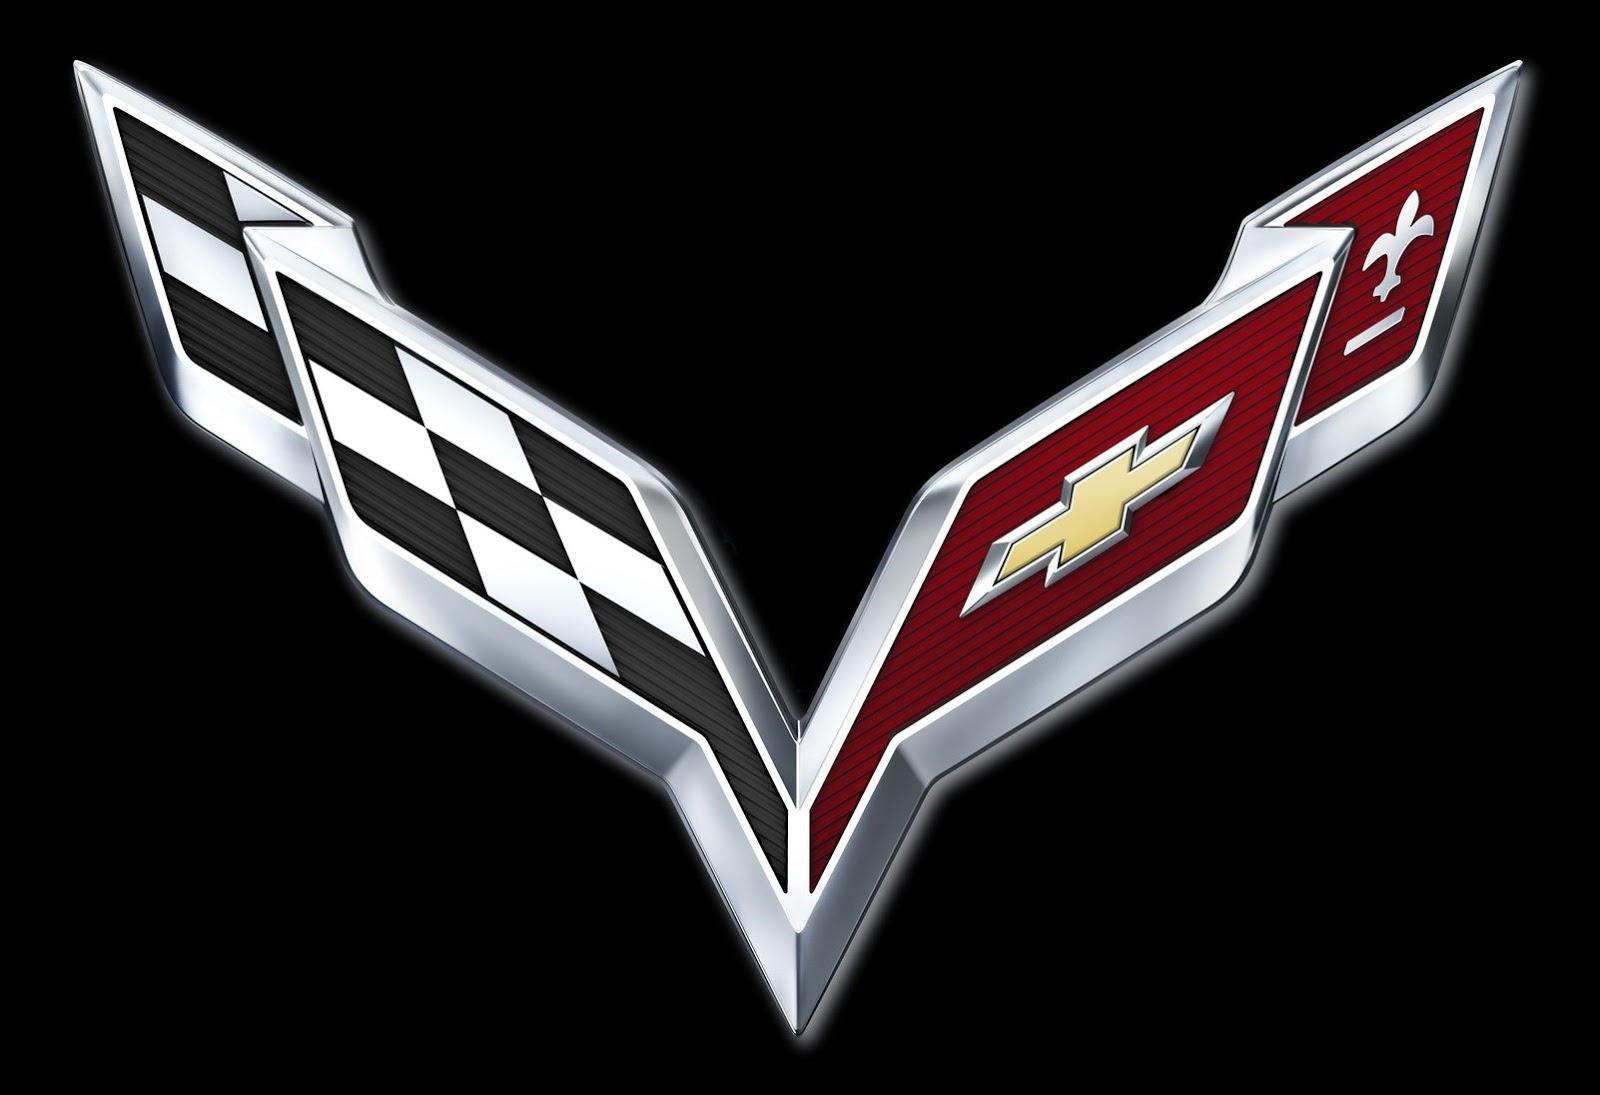 2015 Corvette Logo - GM Reveals 2014 Corvette Logo, Confirms C7 Debut Date - Corvette Online